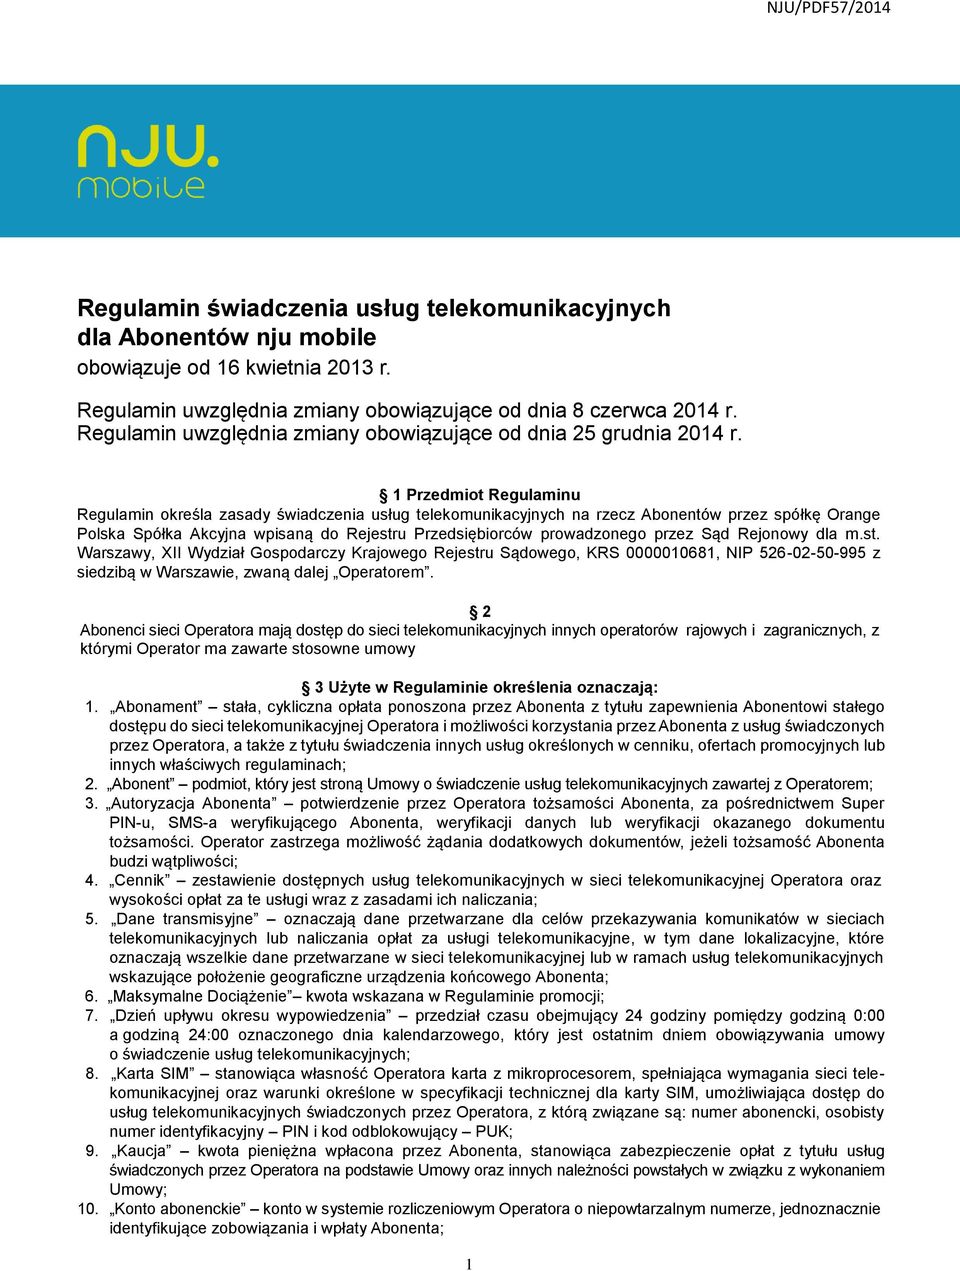 1 Przedmiot Regulaminu Regulamin określa zasady świadczenia usług telekomunikacyjnych na rzecz Abonentów przez spółkę Orange Polska Spółka Akcyjna wpisaną do Rejestru Przedsiębiorców prowadzonego